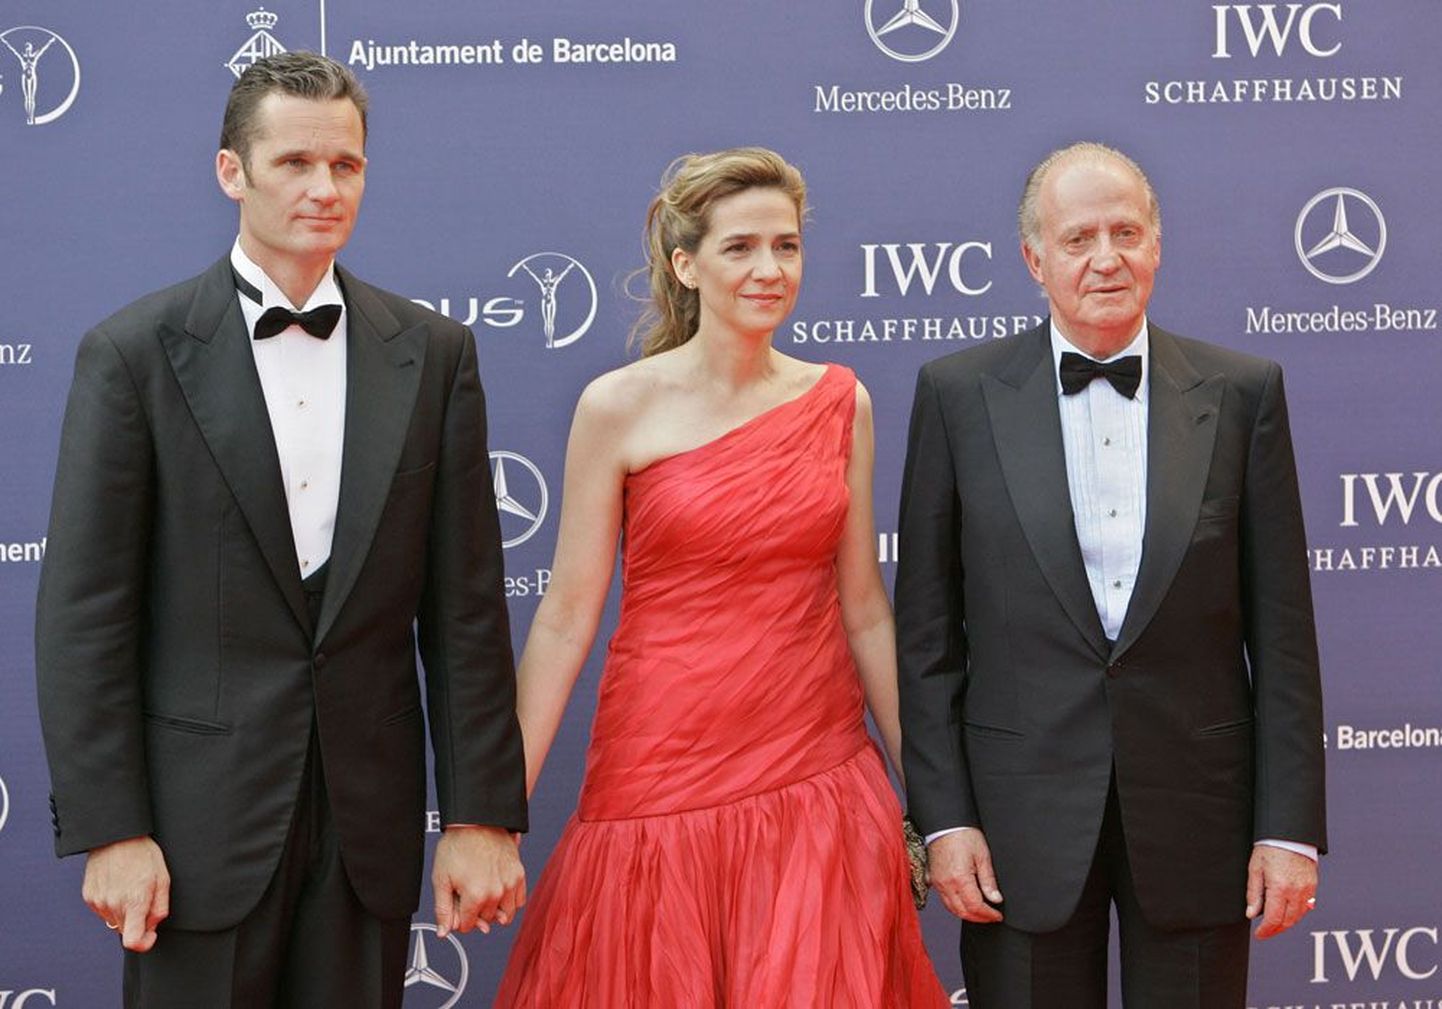 Hispaania kuningas Juan Carlos (paremalt), tema tütar printsess Cristina ja tolle abikaasa Iñaki Urdangarin 2006. aastal Barcelonas. Kõiki kolme on viimastel aastatel tabanud skandaalid, mis on rikkunud kuningakoja mainet.